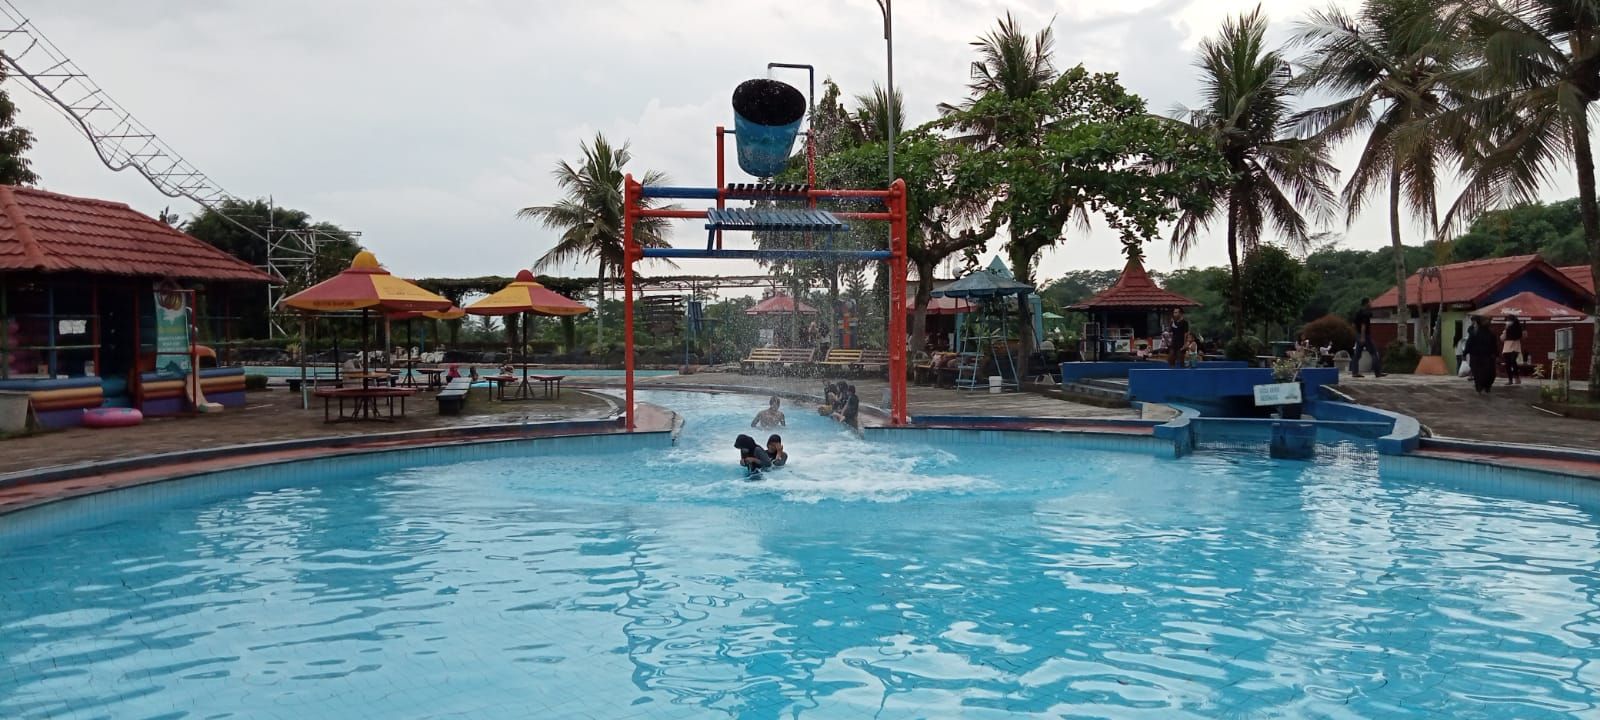 Salah satu spot permainan air di Objek Wisata Air Bojongsari Purbalingga